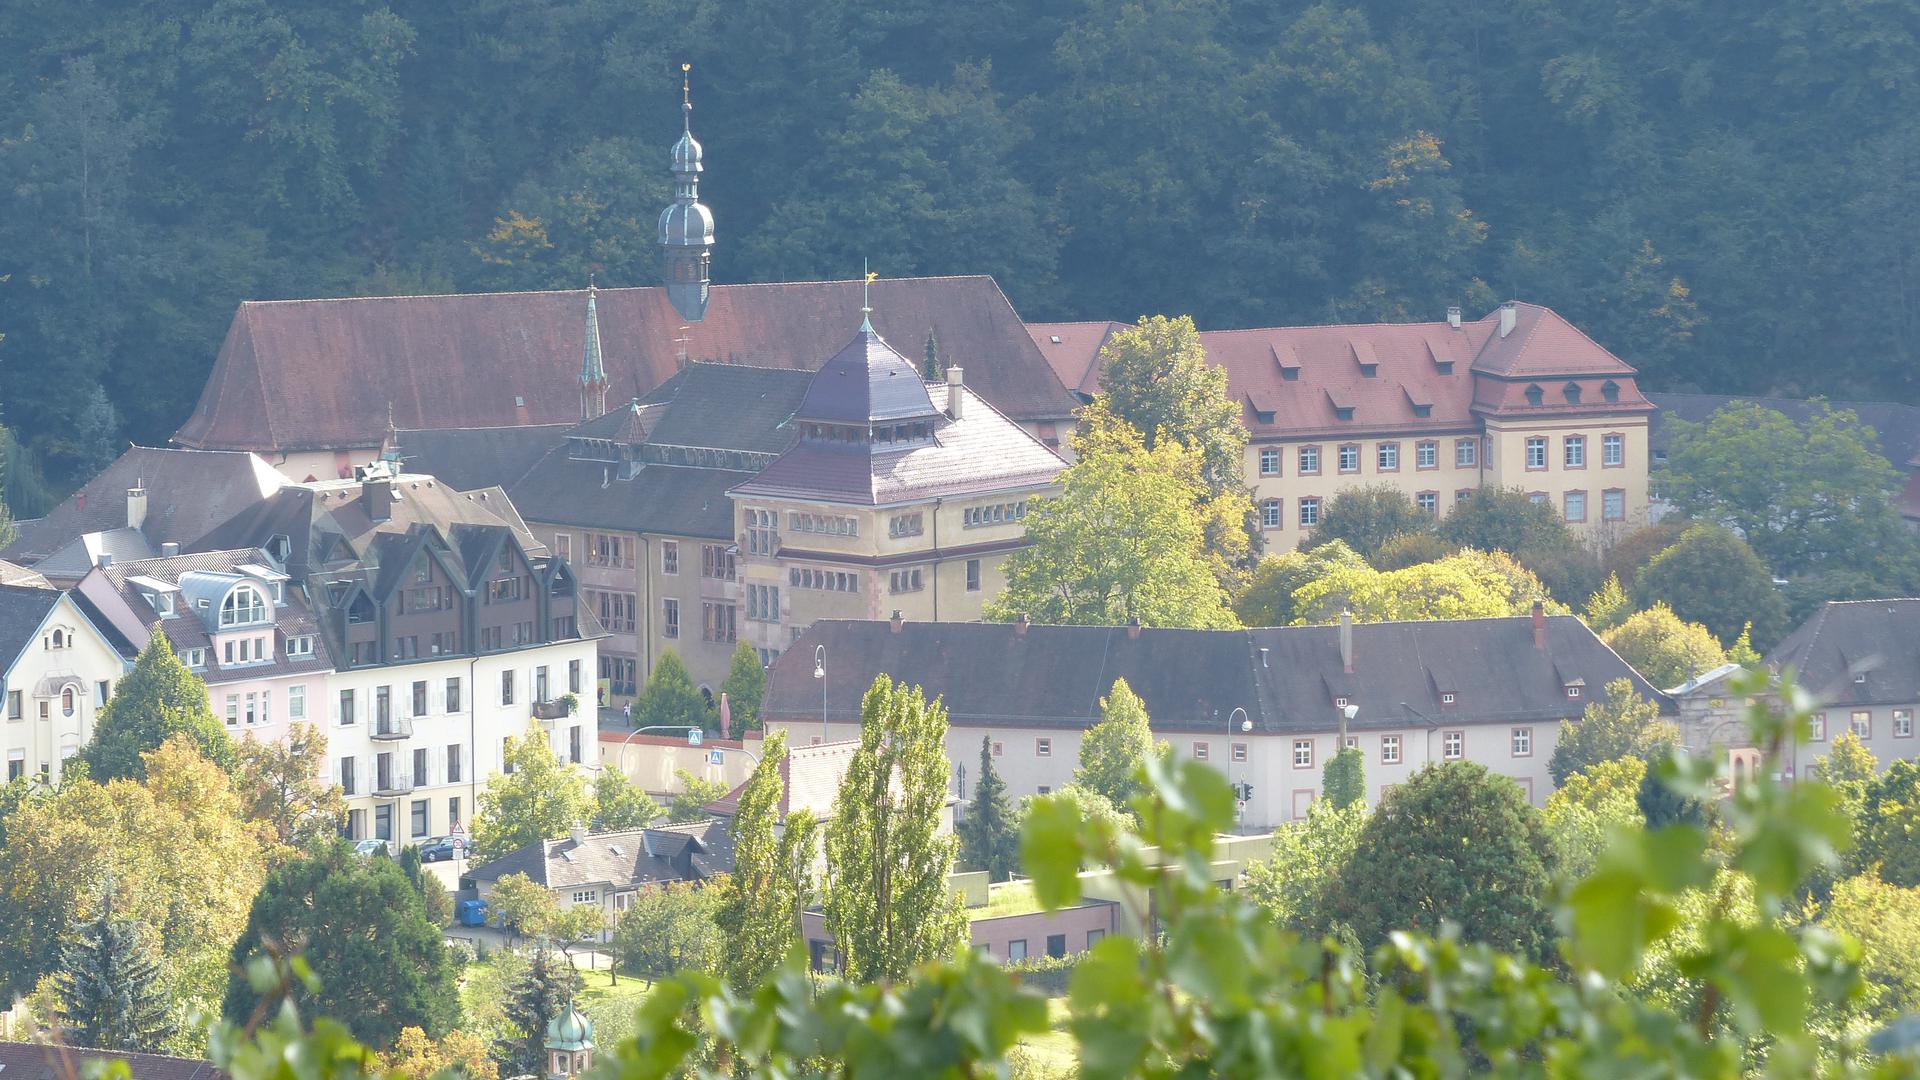 Die Ansicht zeigt das Kloster Lichtental